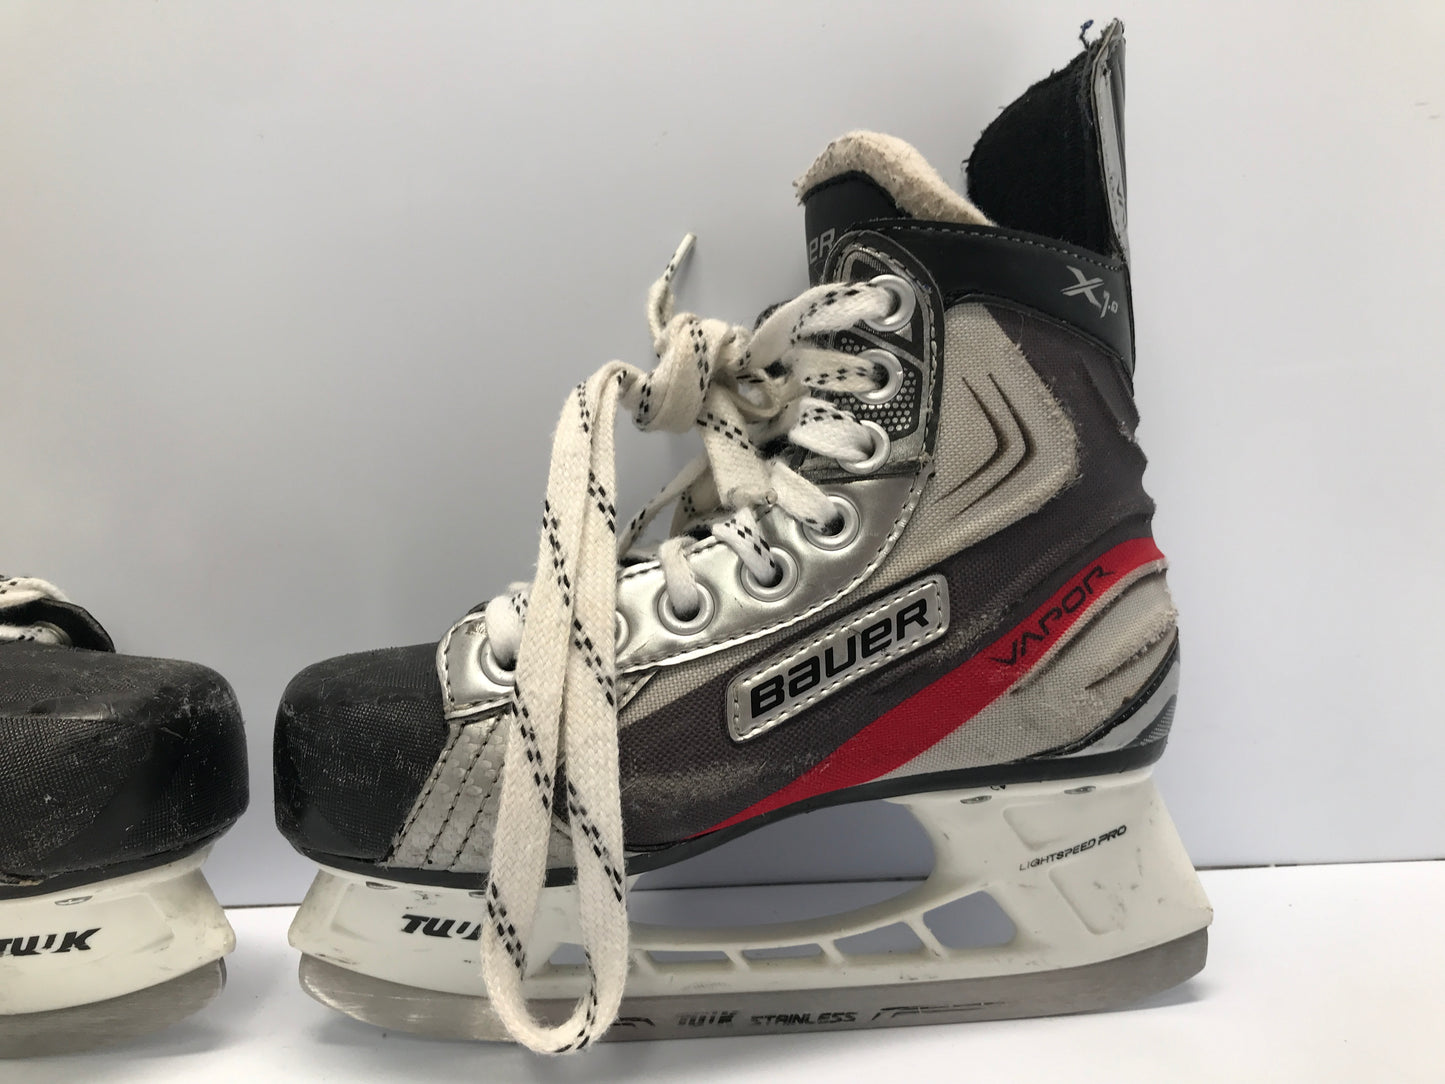 Hockey Skates Child Size 1 Shoe Size 12 Bauer Vapor